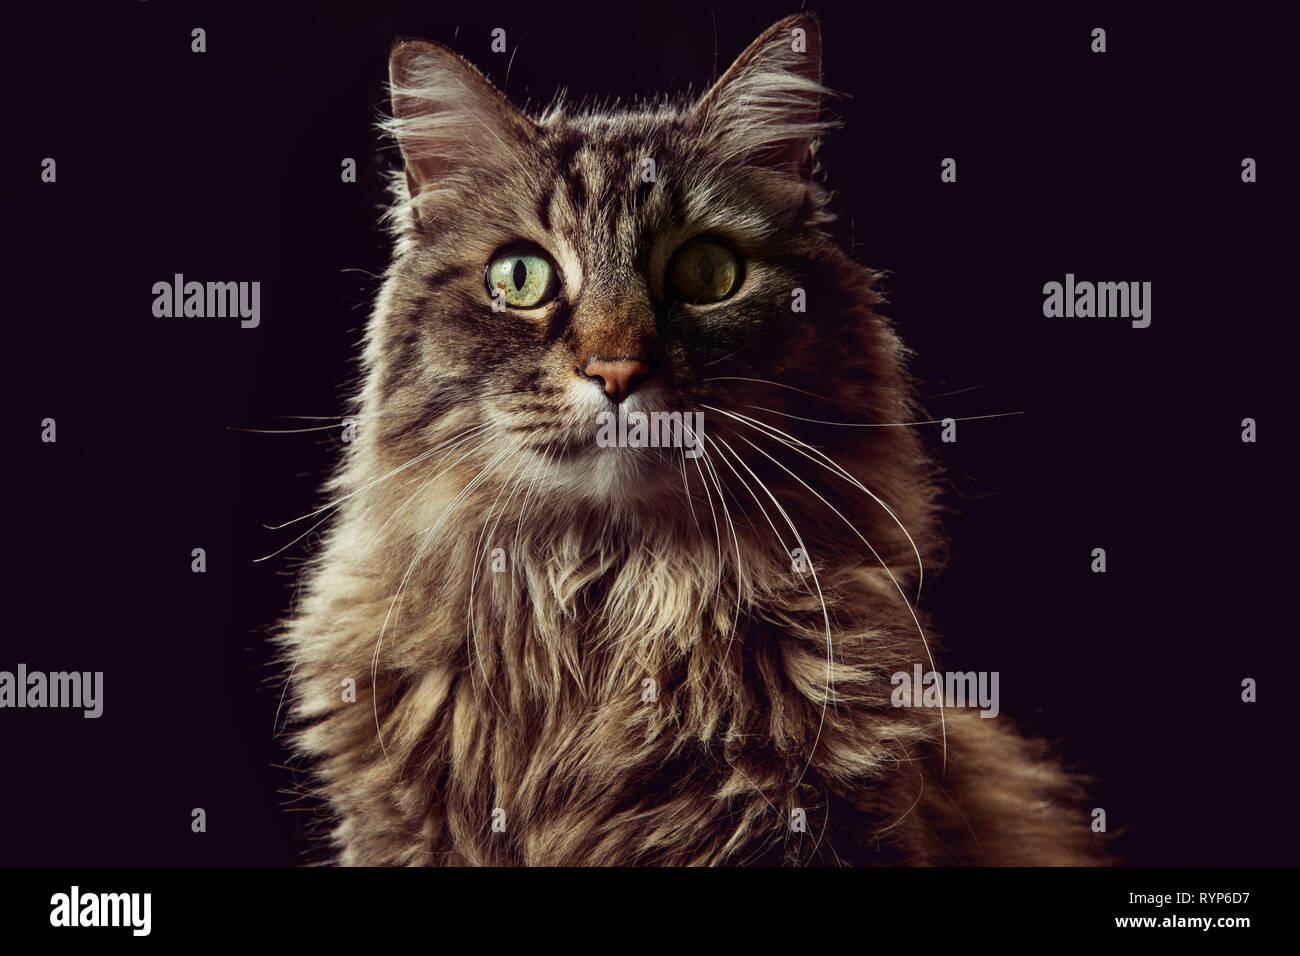 Close-up retrato de estudio de un gato atigrado marrón mirando directamente a la cámara sobre un fondo negro. Foto de stock